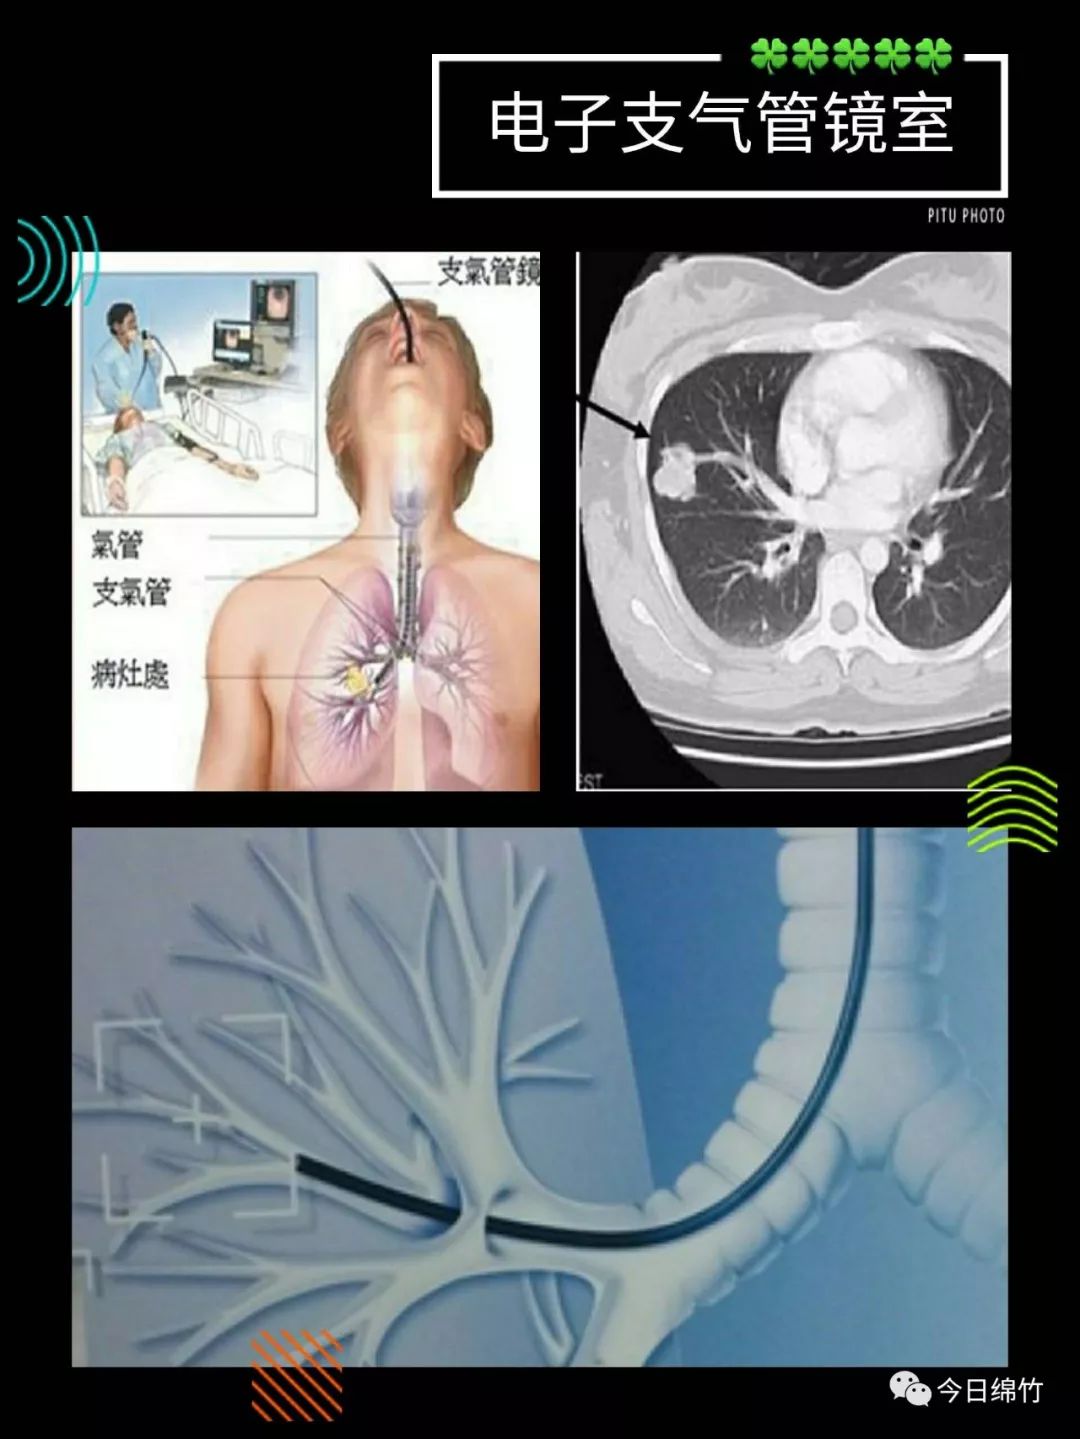 【关注】呼吸道疾病高发季节,华西医院绵竹医院和你聊聊"电子支气管镜